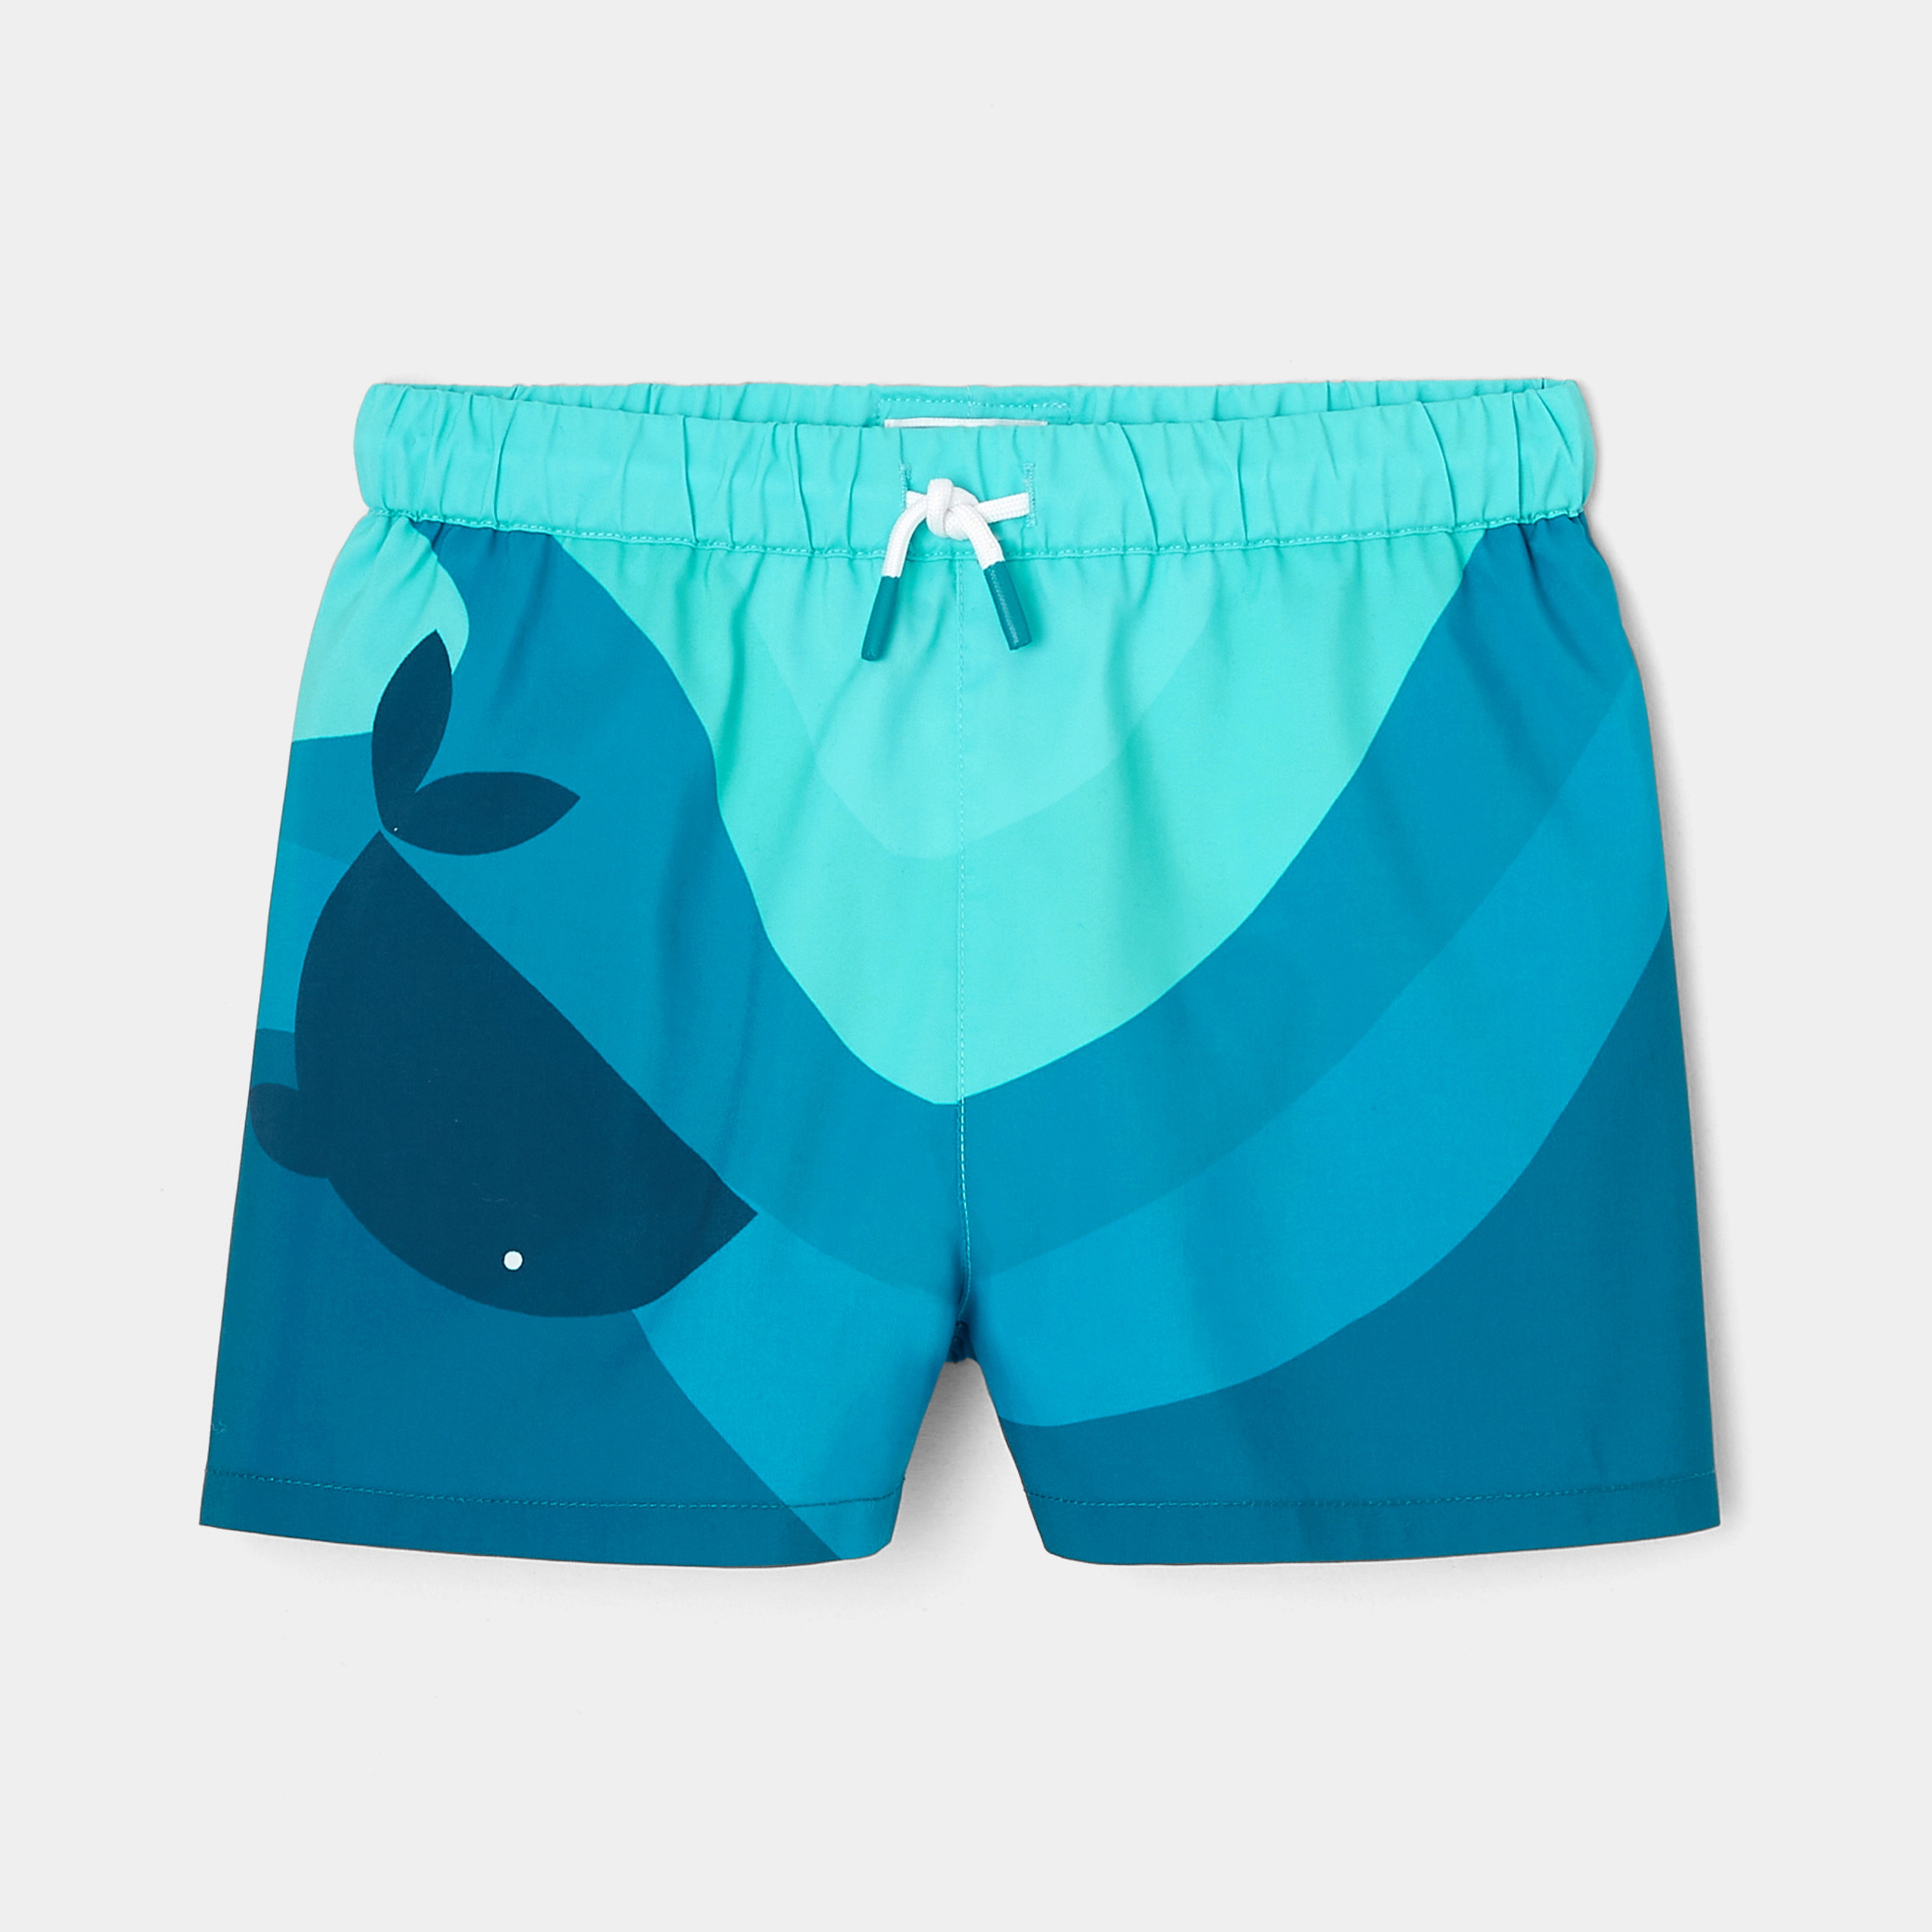 Boy swim trunks